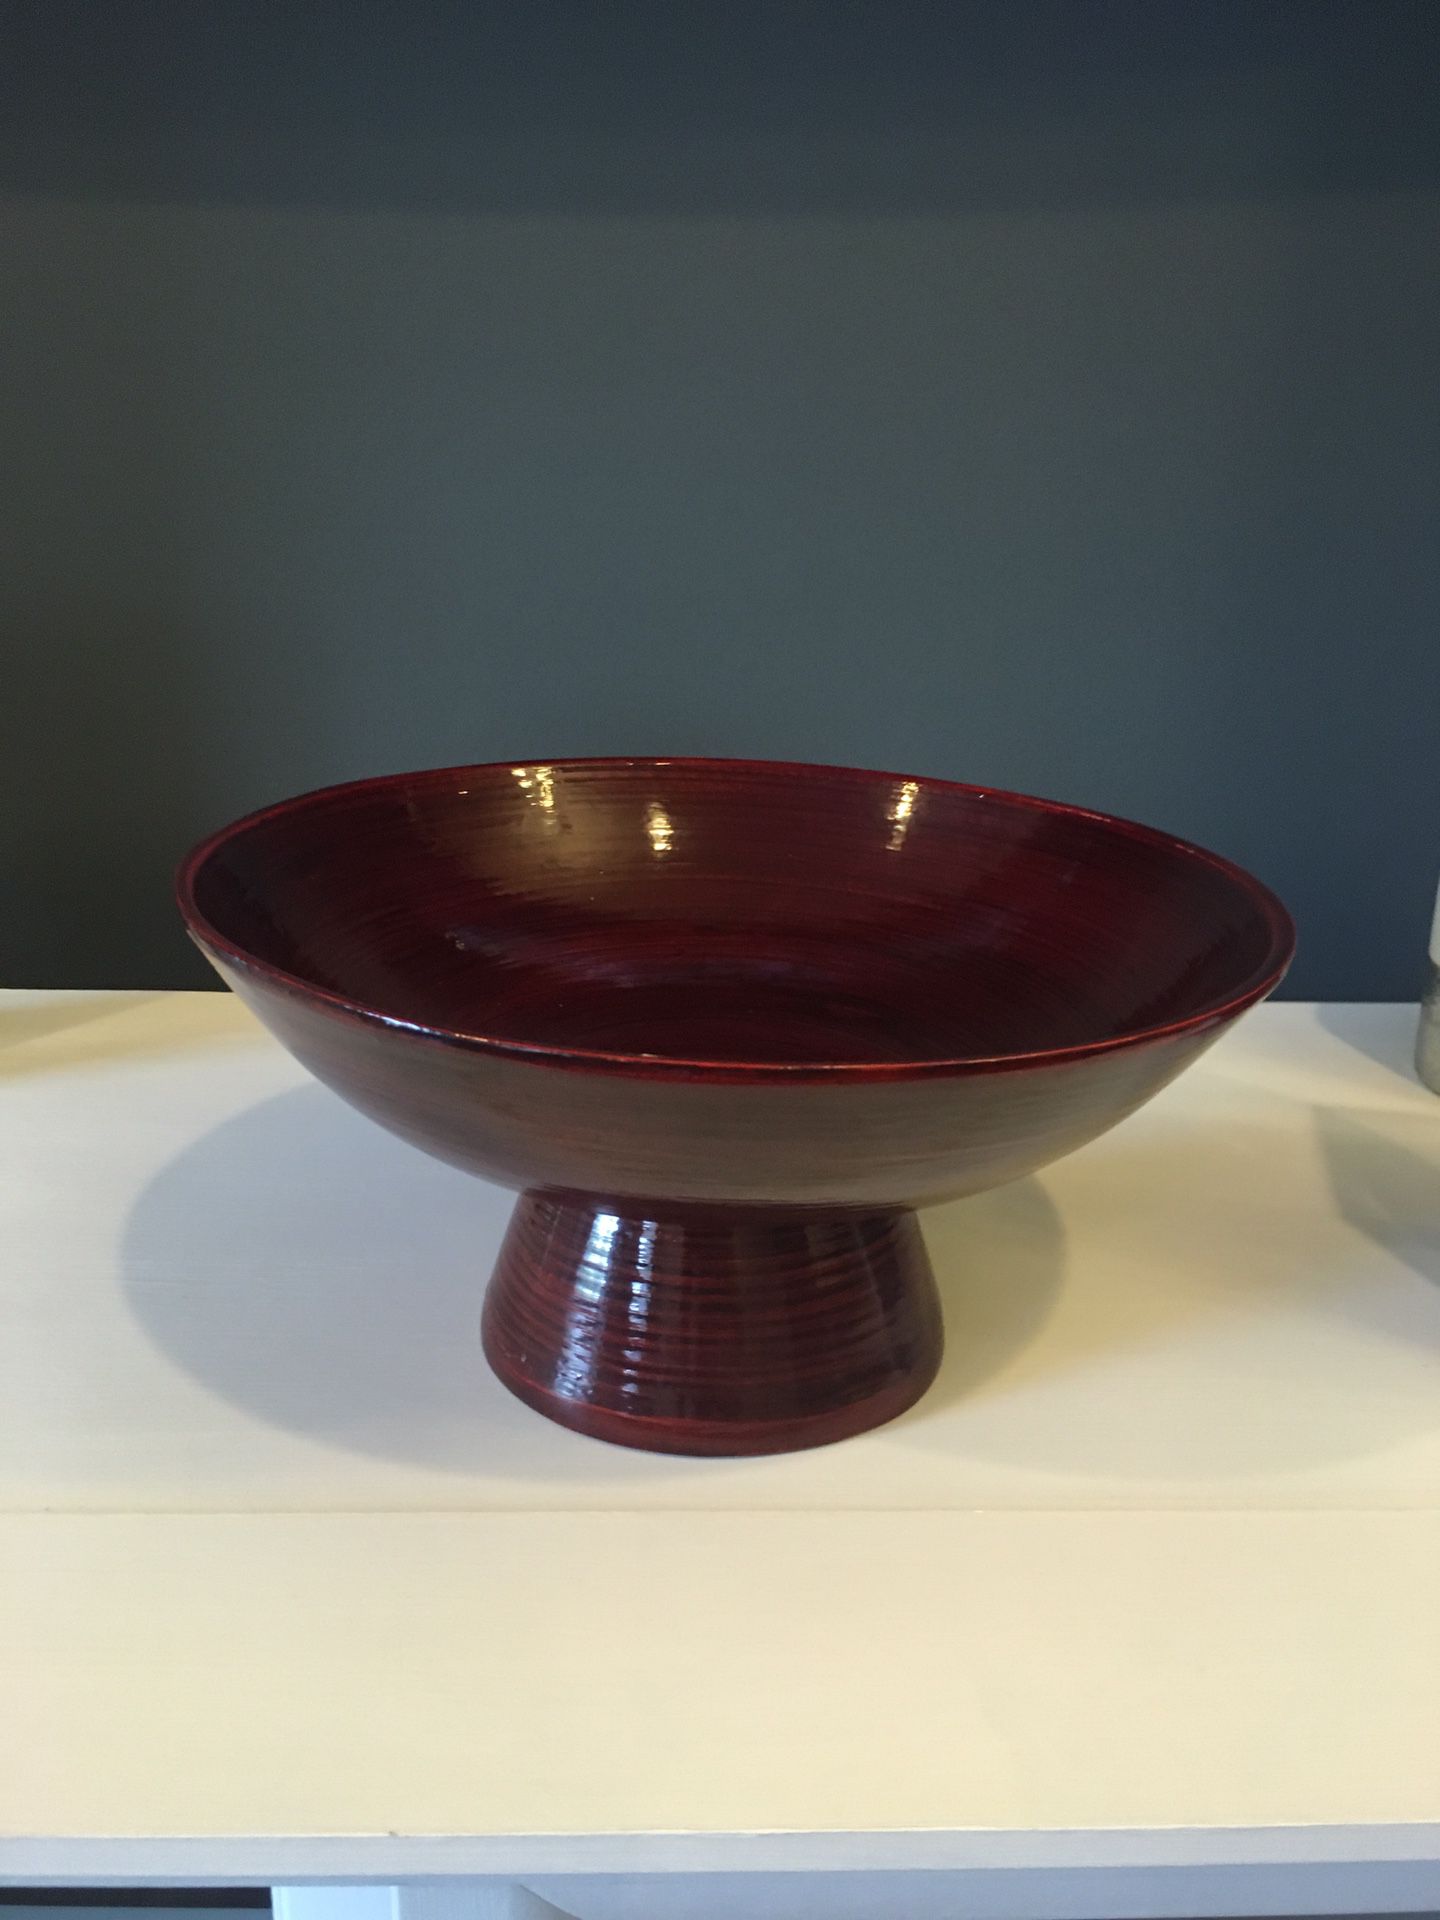 Pier 1 decorative bowl for sale!